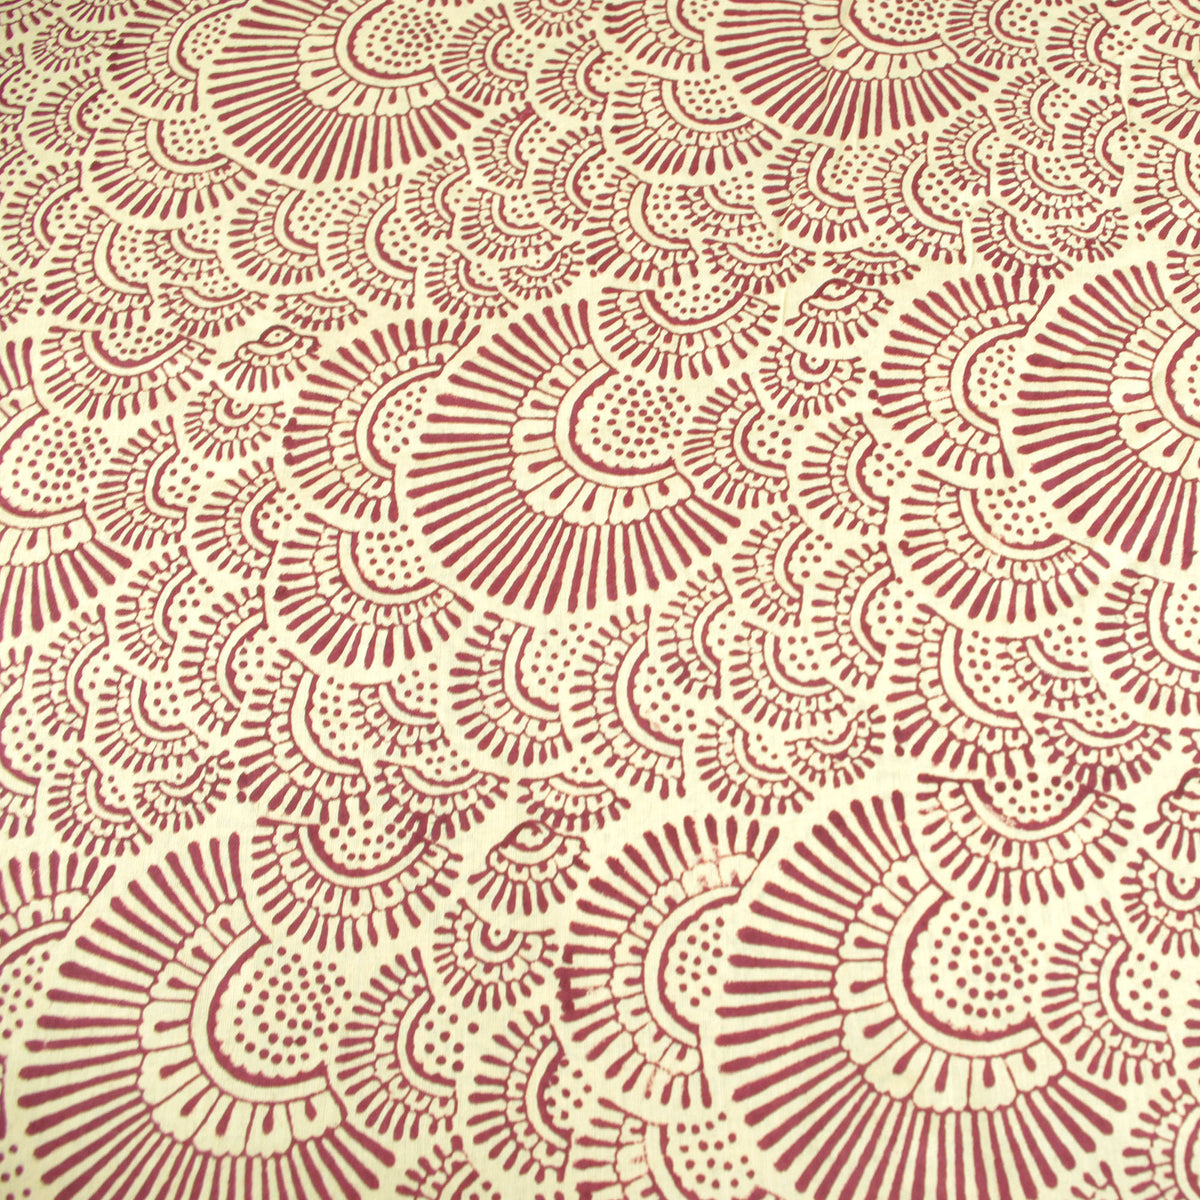 Indischer Handblockdruck mit rotem Henna-Muster auf cremefarbenem Voile-Stoff aus 100 % Baumwolle, Design 354